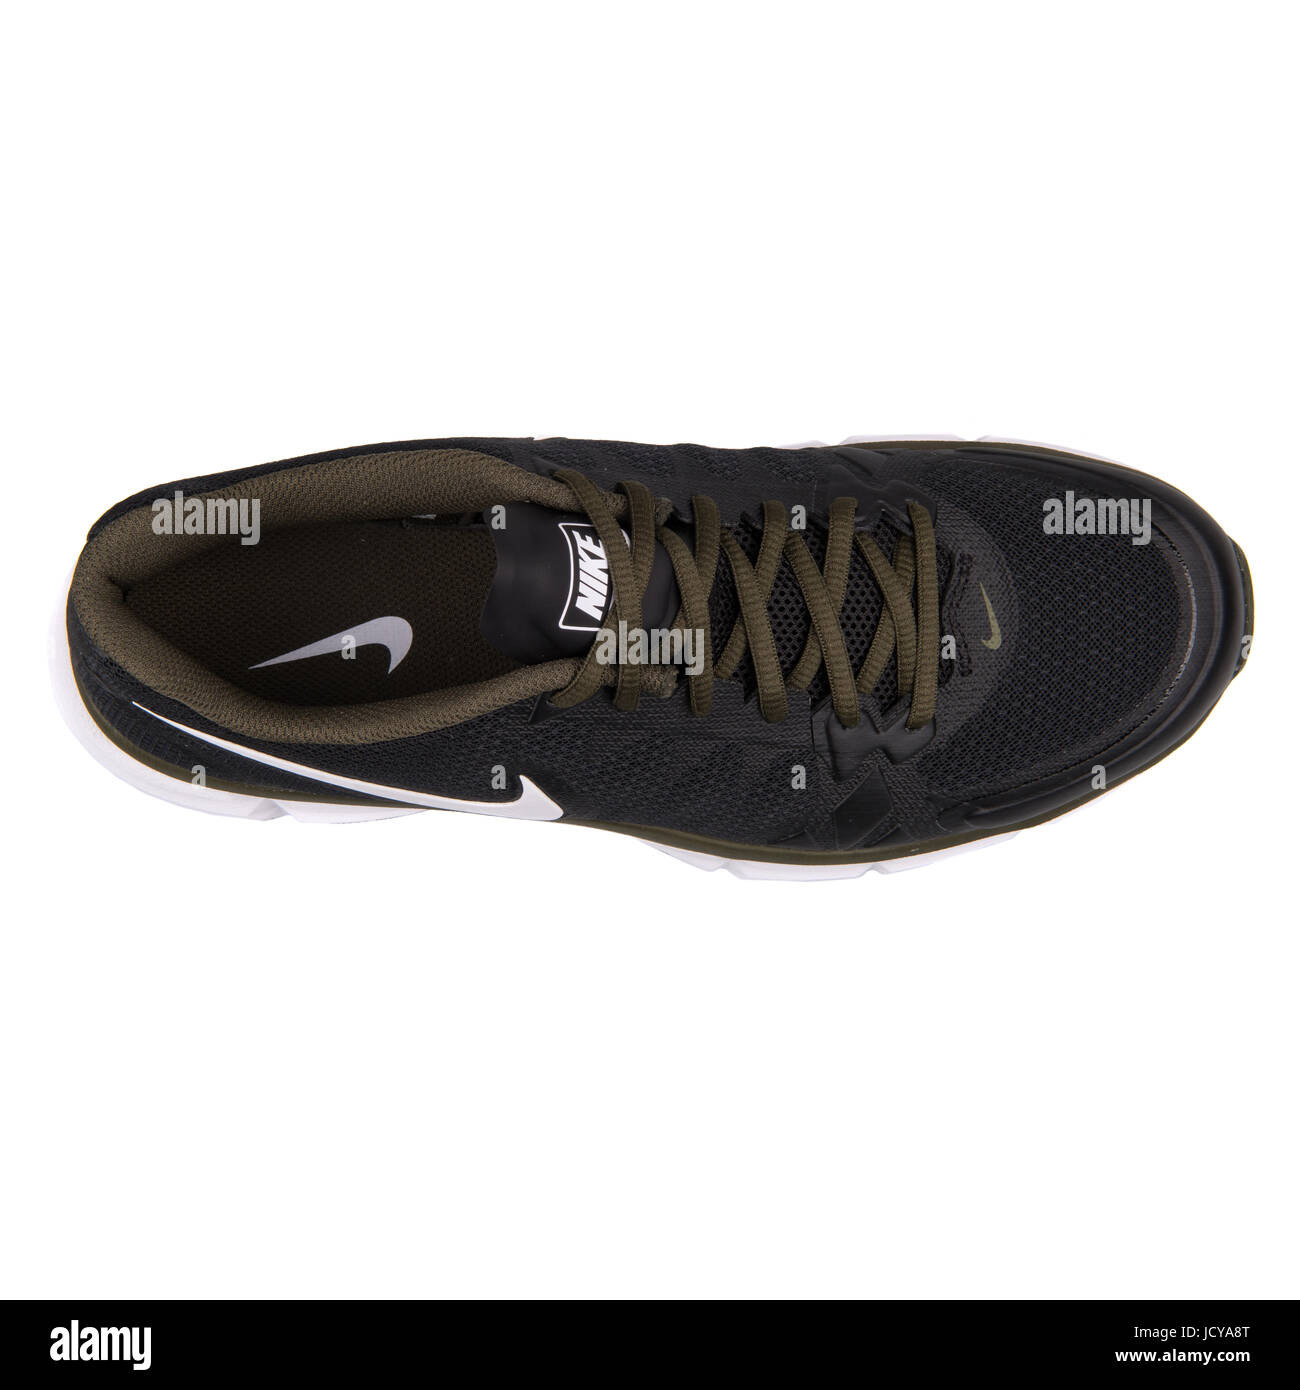 Nike Dual Fusion TR 6 Negro y caqui hombres calzados running - 704889-013  Fotografía de stock - Alamy